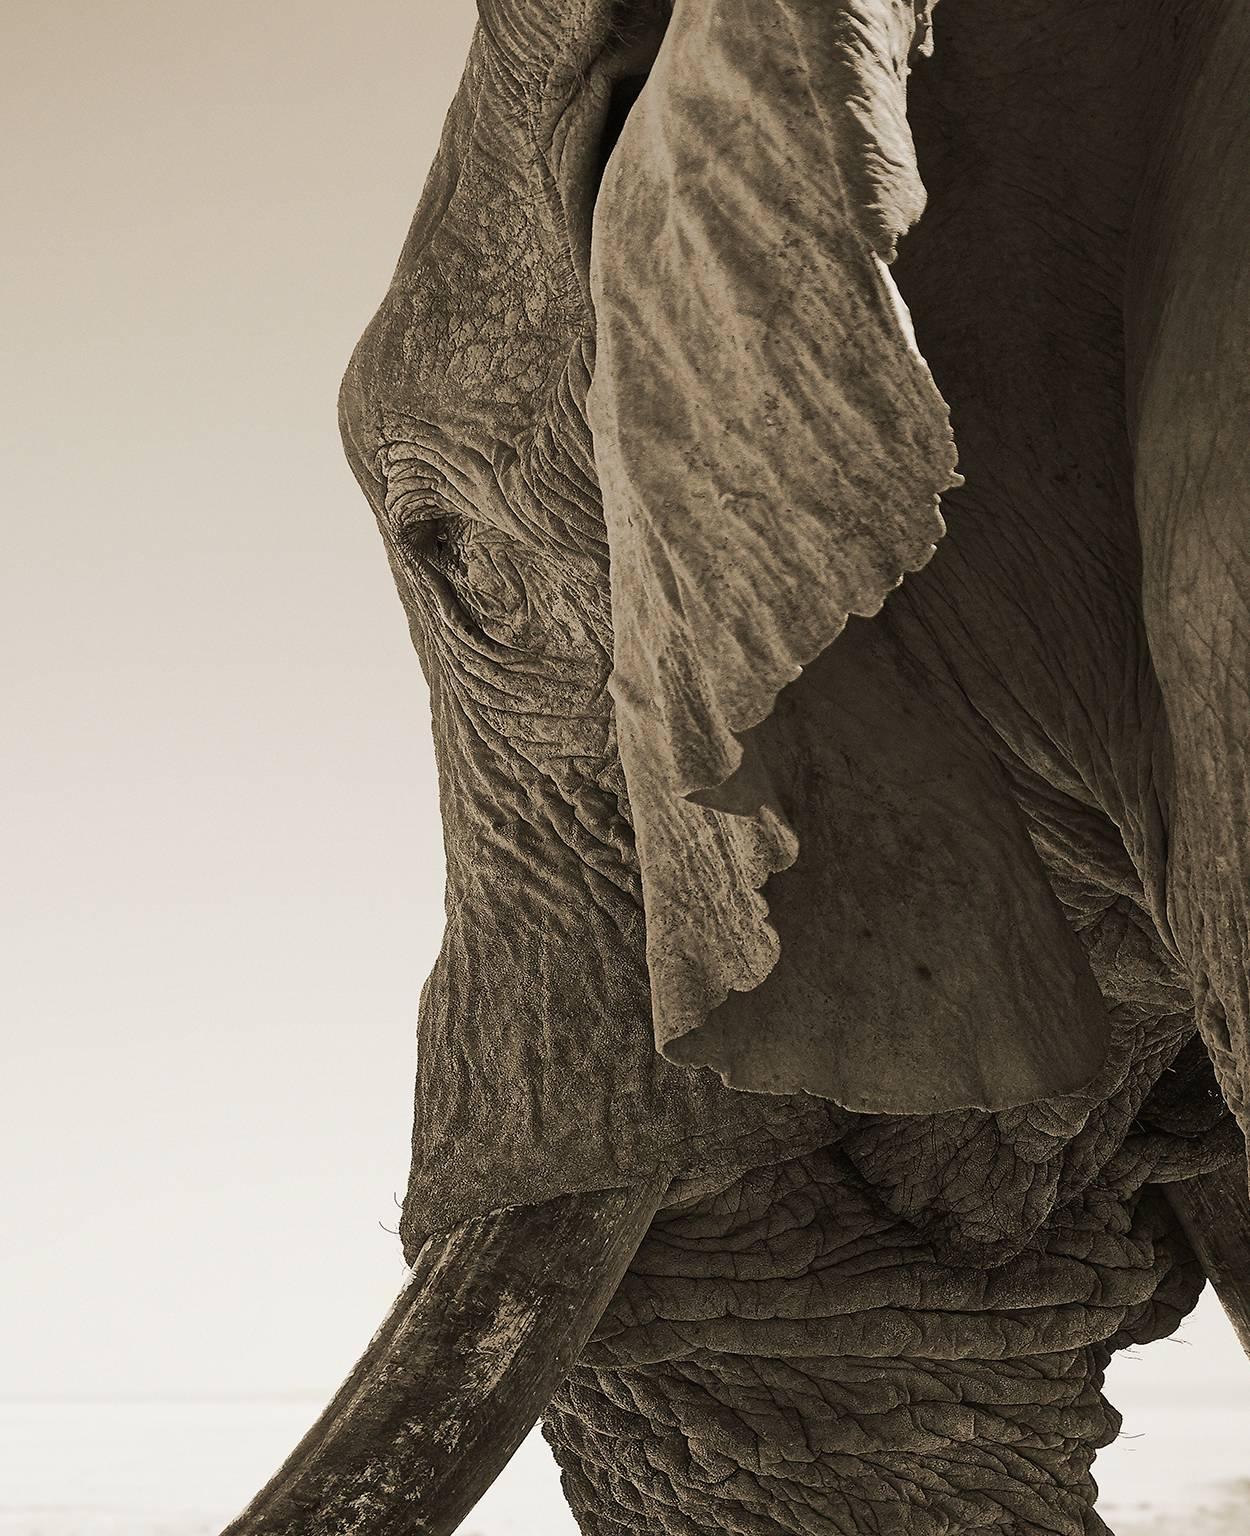 Elephant 02 - Photograph by Chris Gordaneer